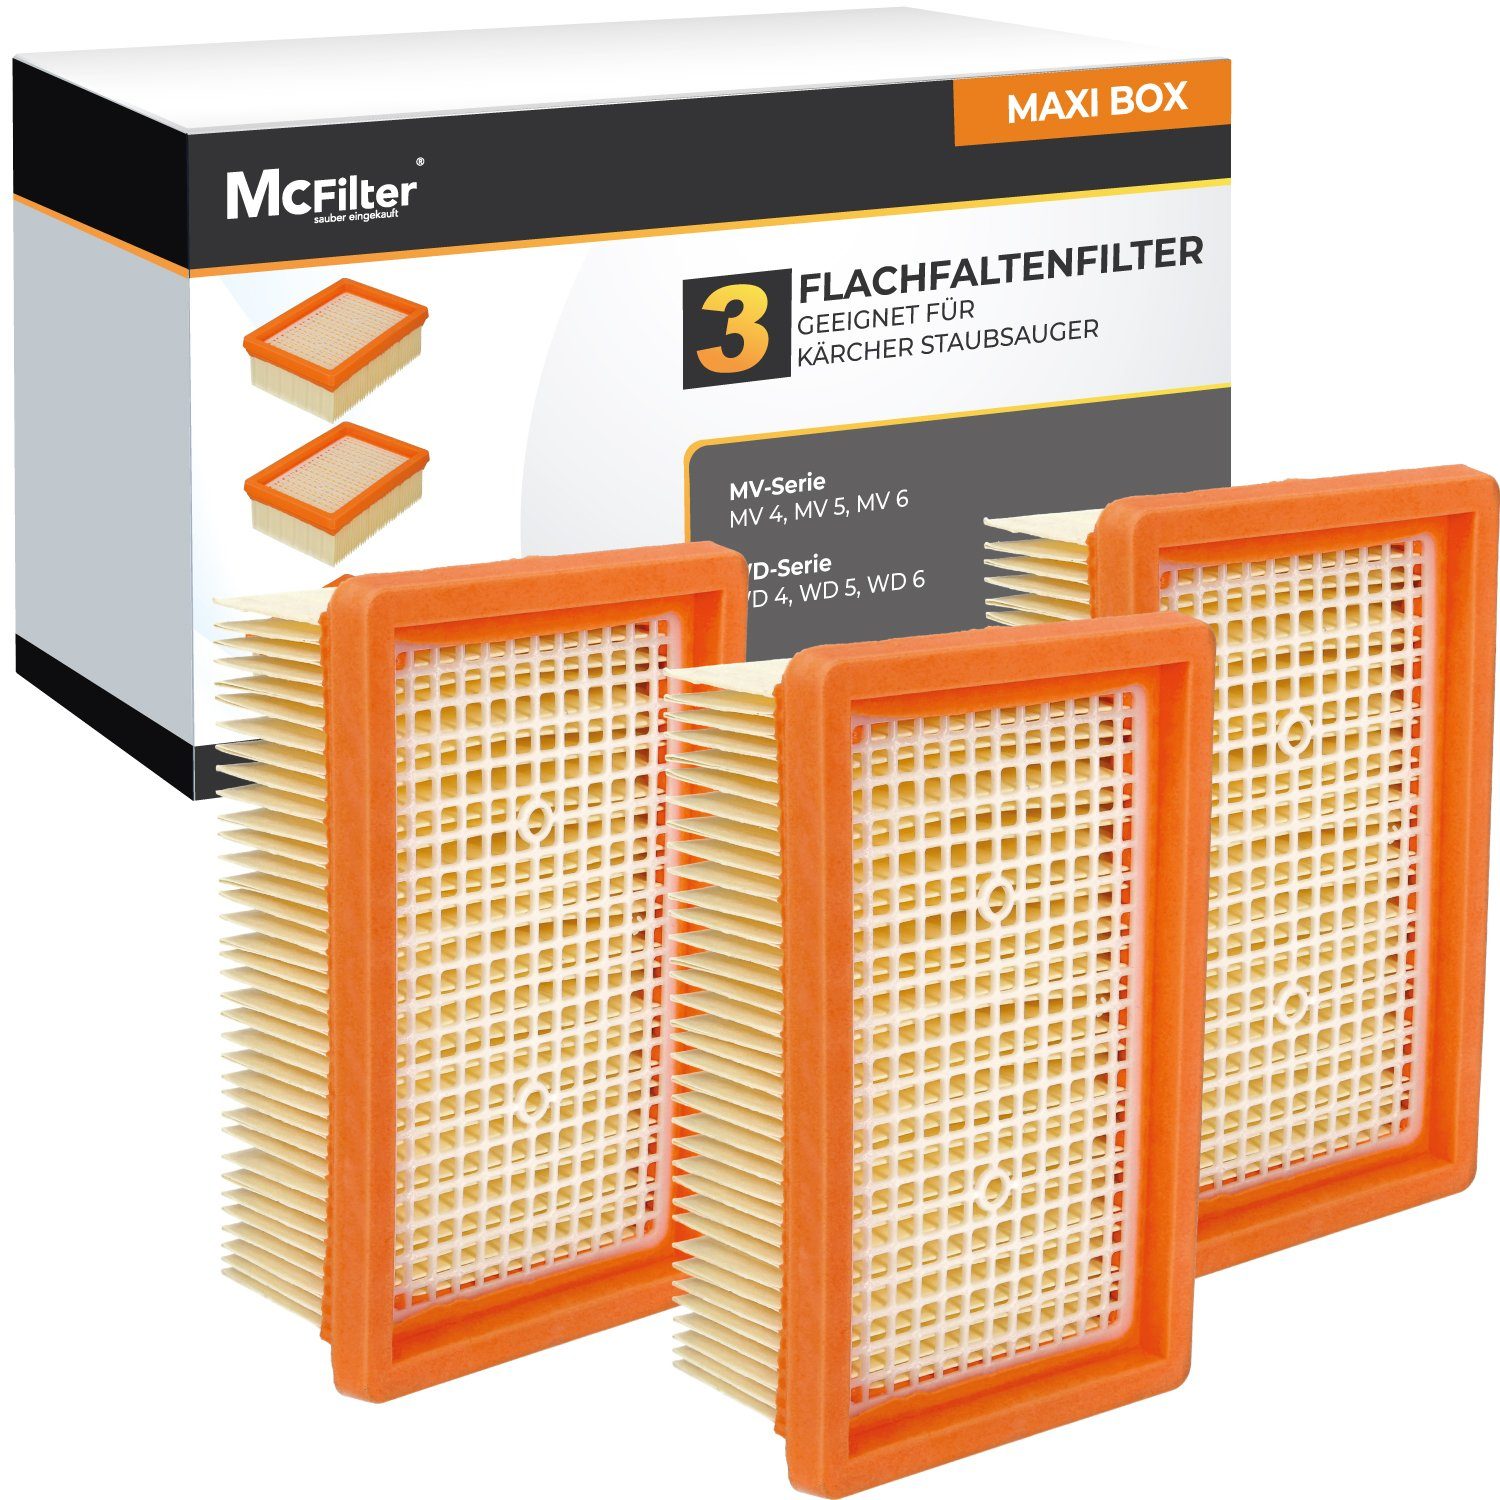 McFilter Flachfaltenfilter (3 Stück) Lamellenfilter Filter geeignet, für Kärcher  WD6 WD 6 P Premium Renovation Kit Mehrzwecksauger, (MAXI BOX, 3-St),  Alternative für Kärcher Filter 2.863-005.0